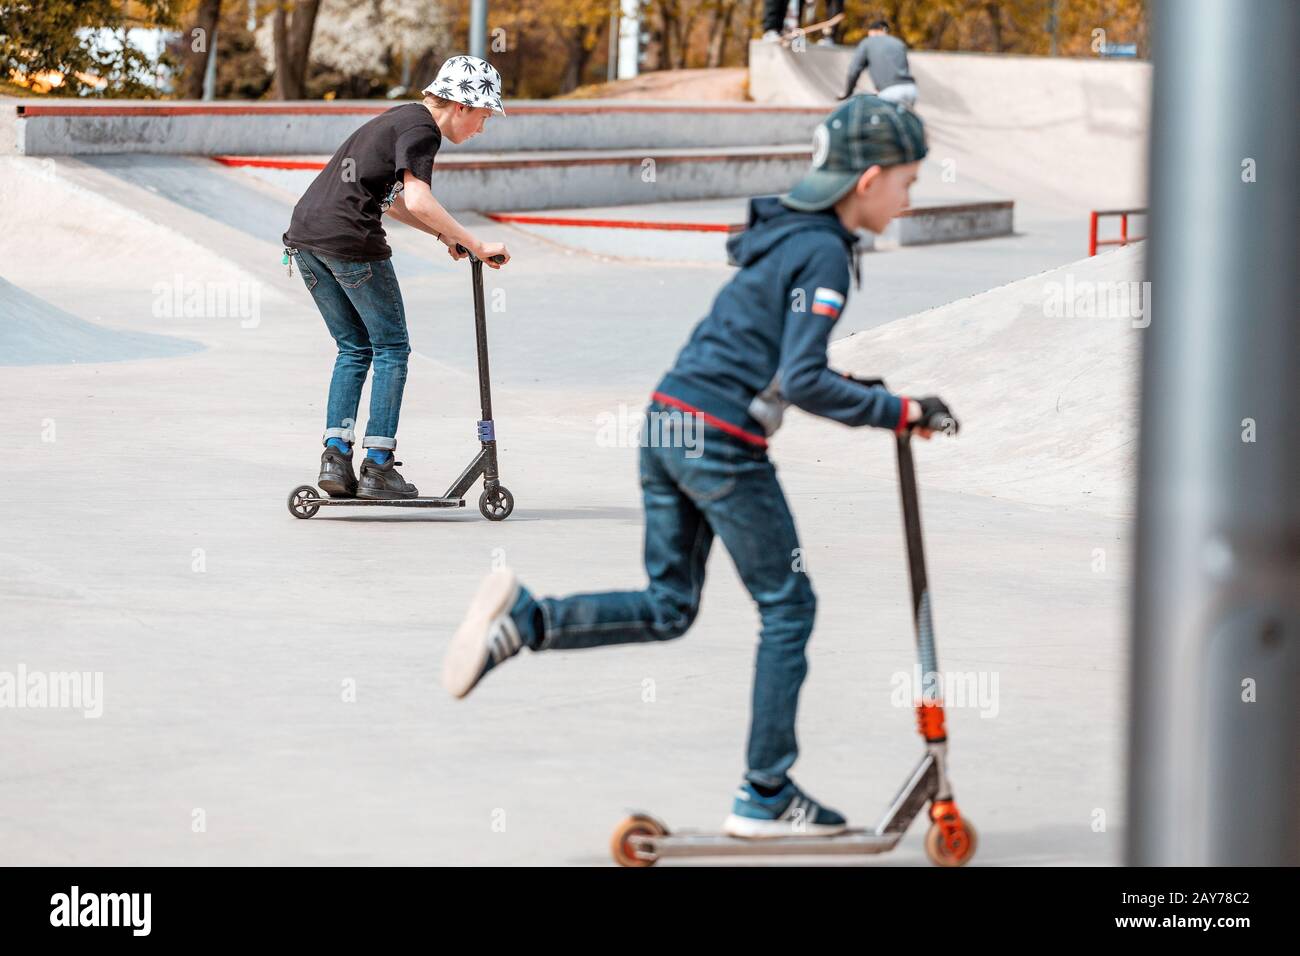 03 mai 2019, Moscou, Russie: Les enfants font du scooter dans un parc de skatepark sur des rampes et font quelques tours Banque D'Images